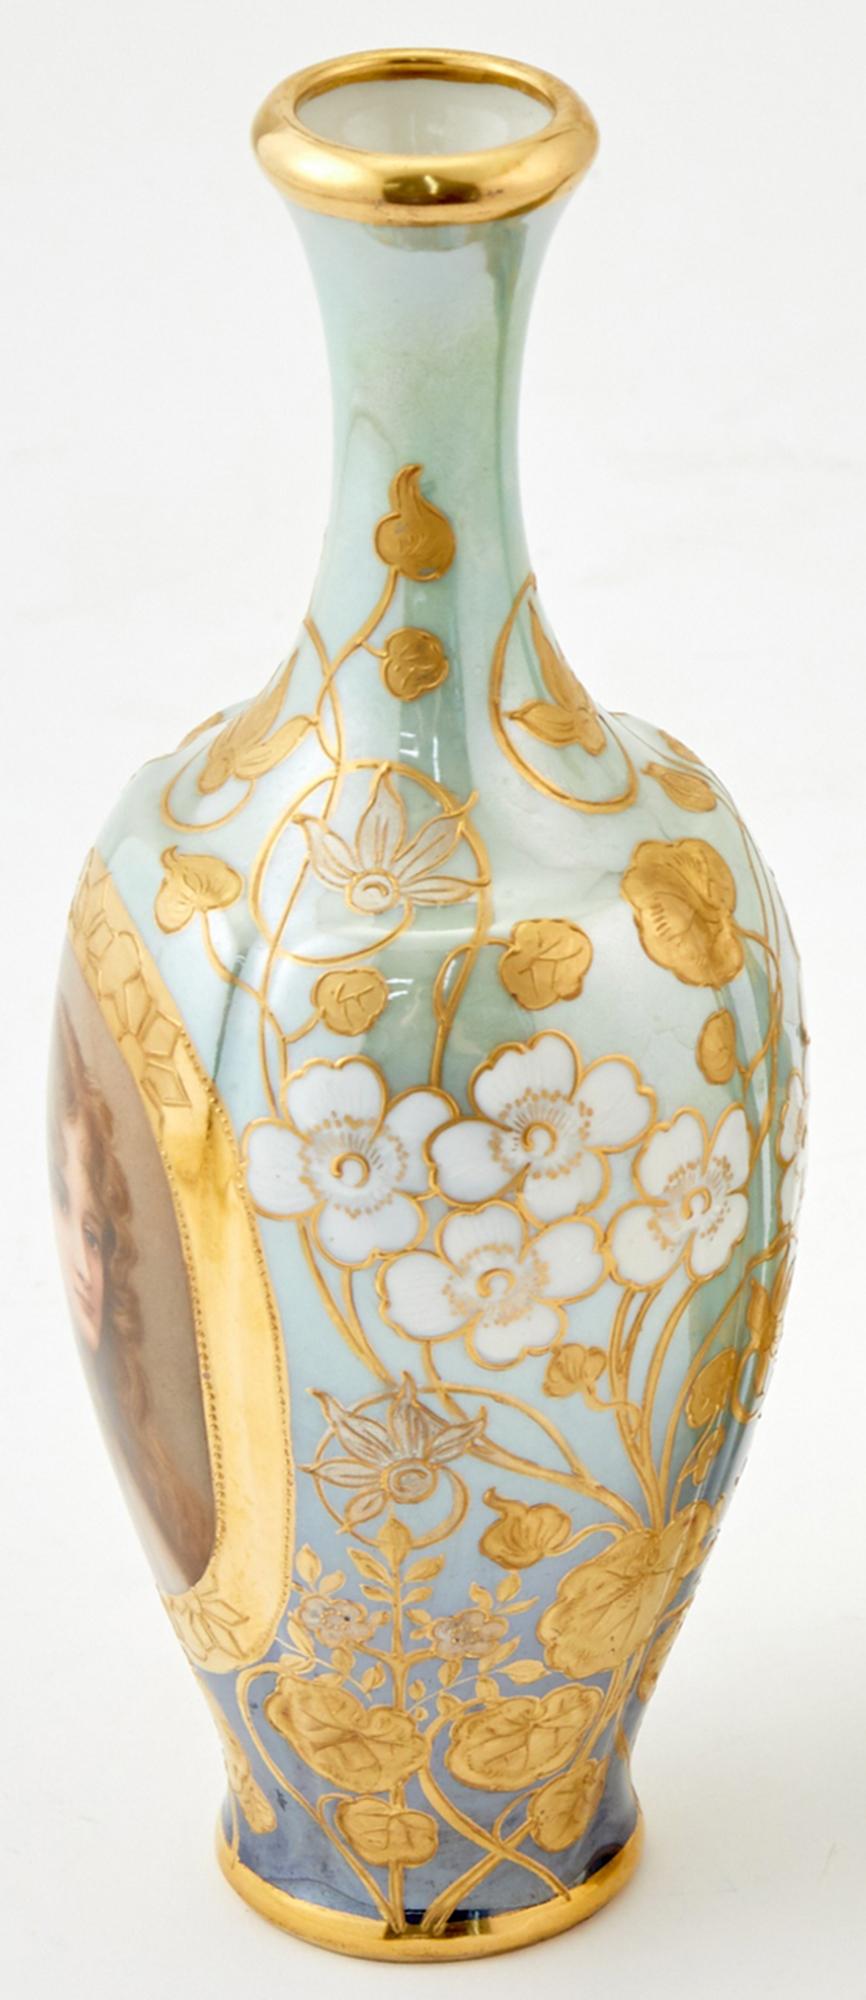 Beau vase portrait royal de Vienne représentant une beauté au visage doux, aux cheveux ondulés, aux yeux bruns et à l'expression neutre, entourée d'une bande de peinture dorée polychrome. Deux tons de bleu provenant de la base et du cou convergent